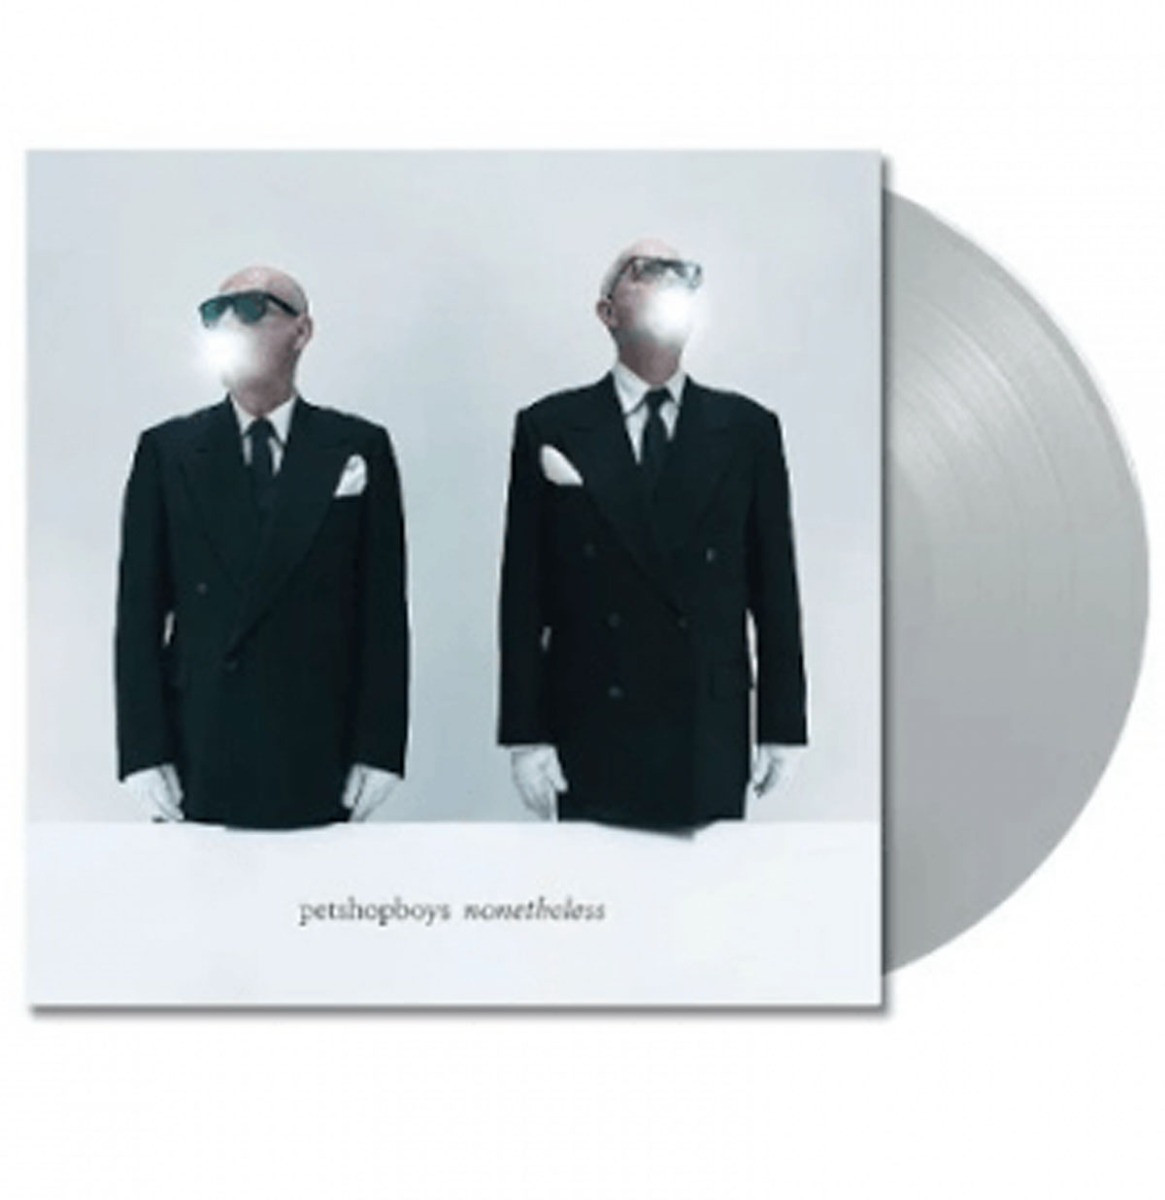 Pet Shop Boys - Nonetheless (Grey Vinyl) LP